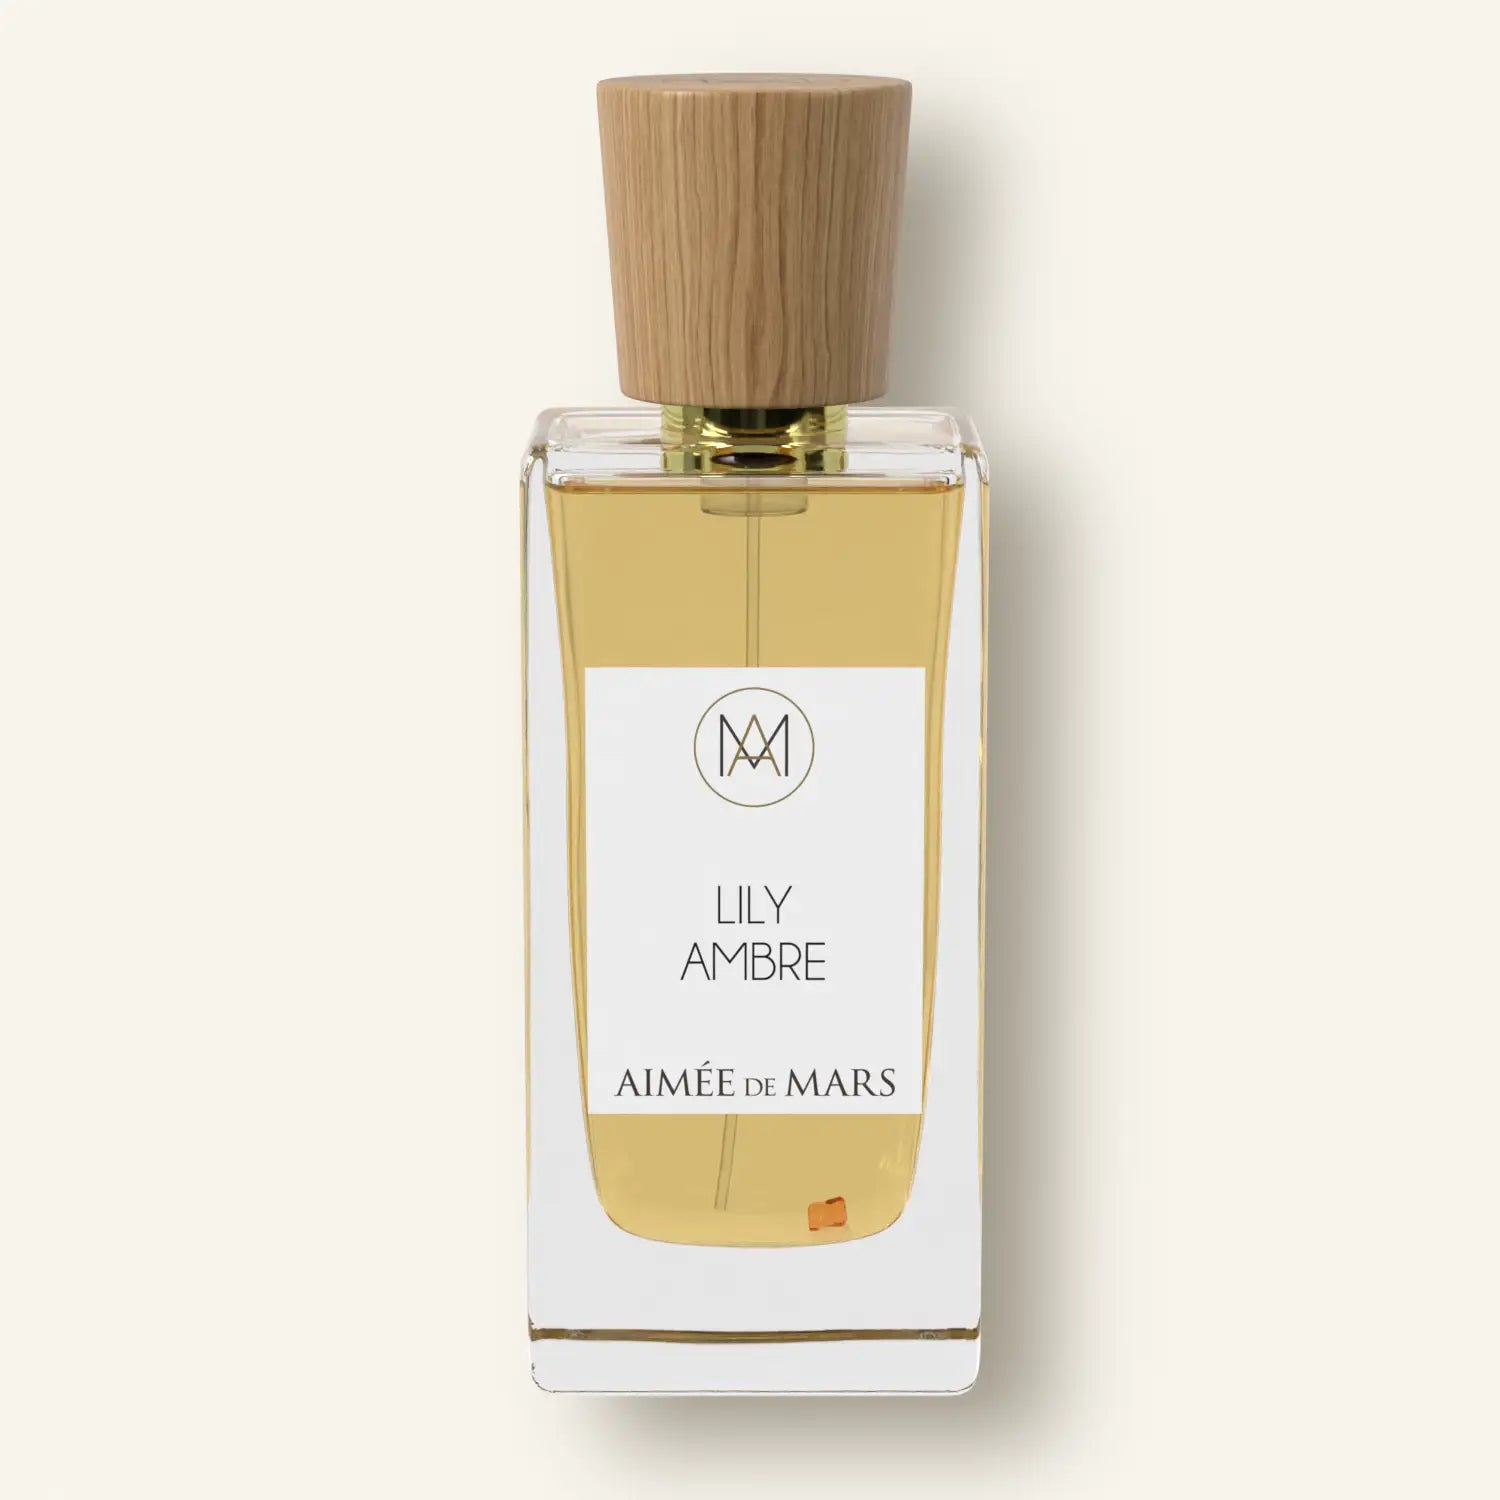 Lily Ambre fragrance elixir